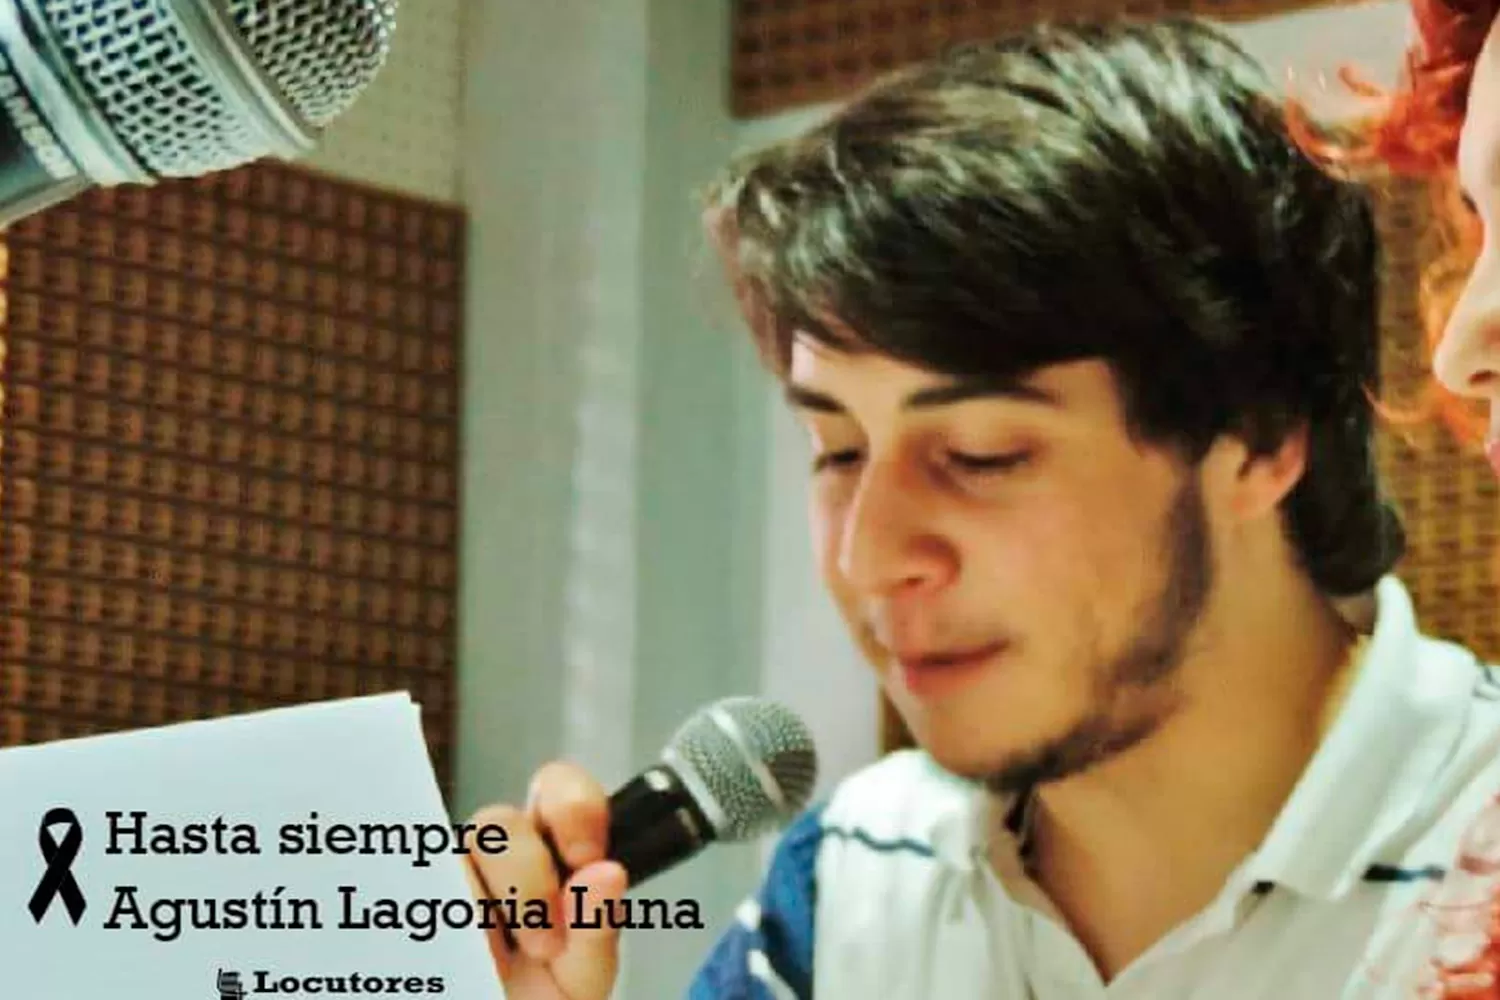 DOLOR Y DESPEDIDA. Agustín Nicolás Lagoria Luna también era locutor.